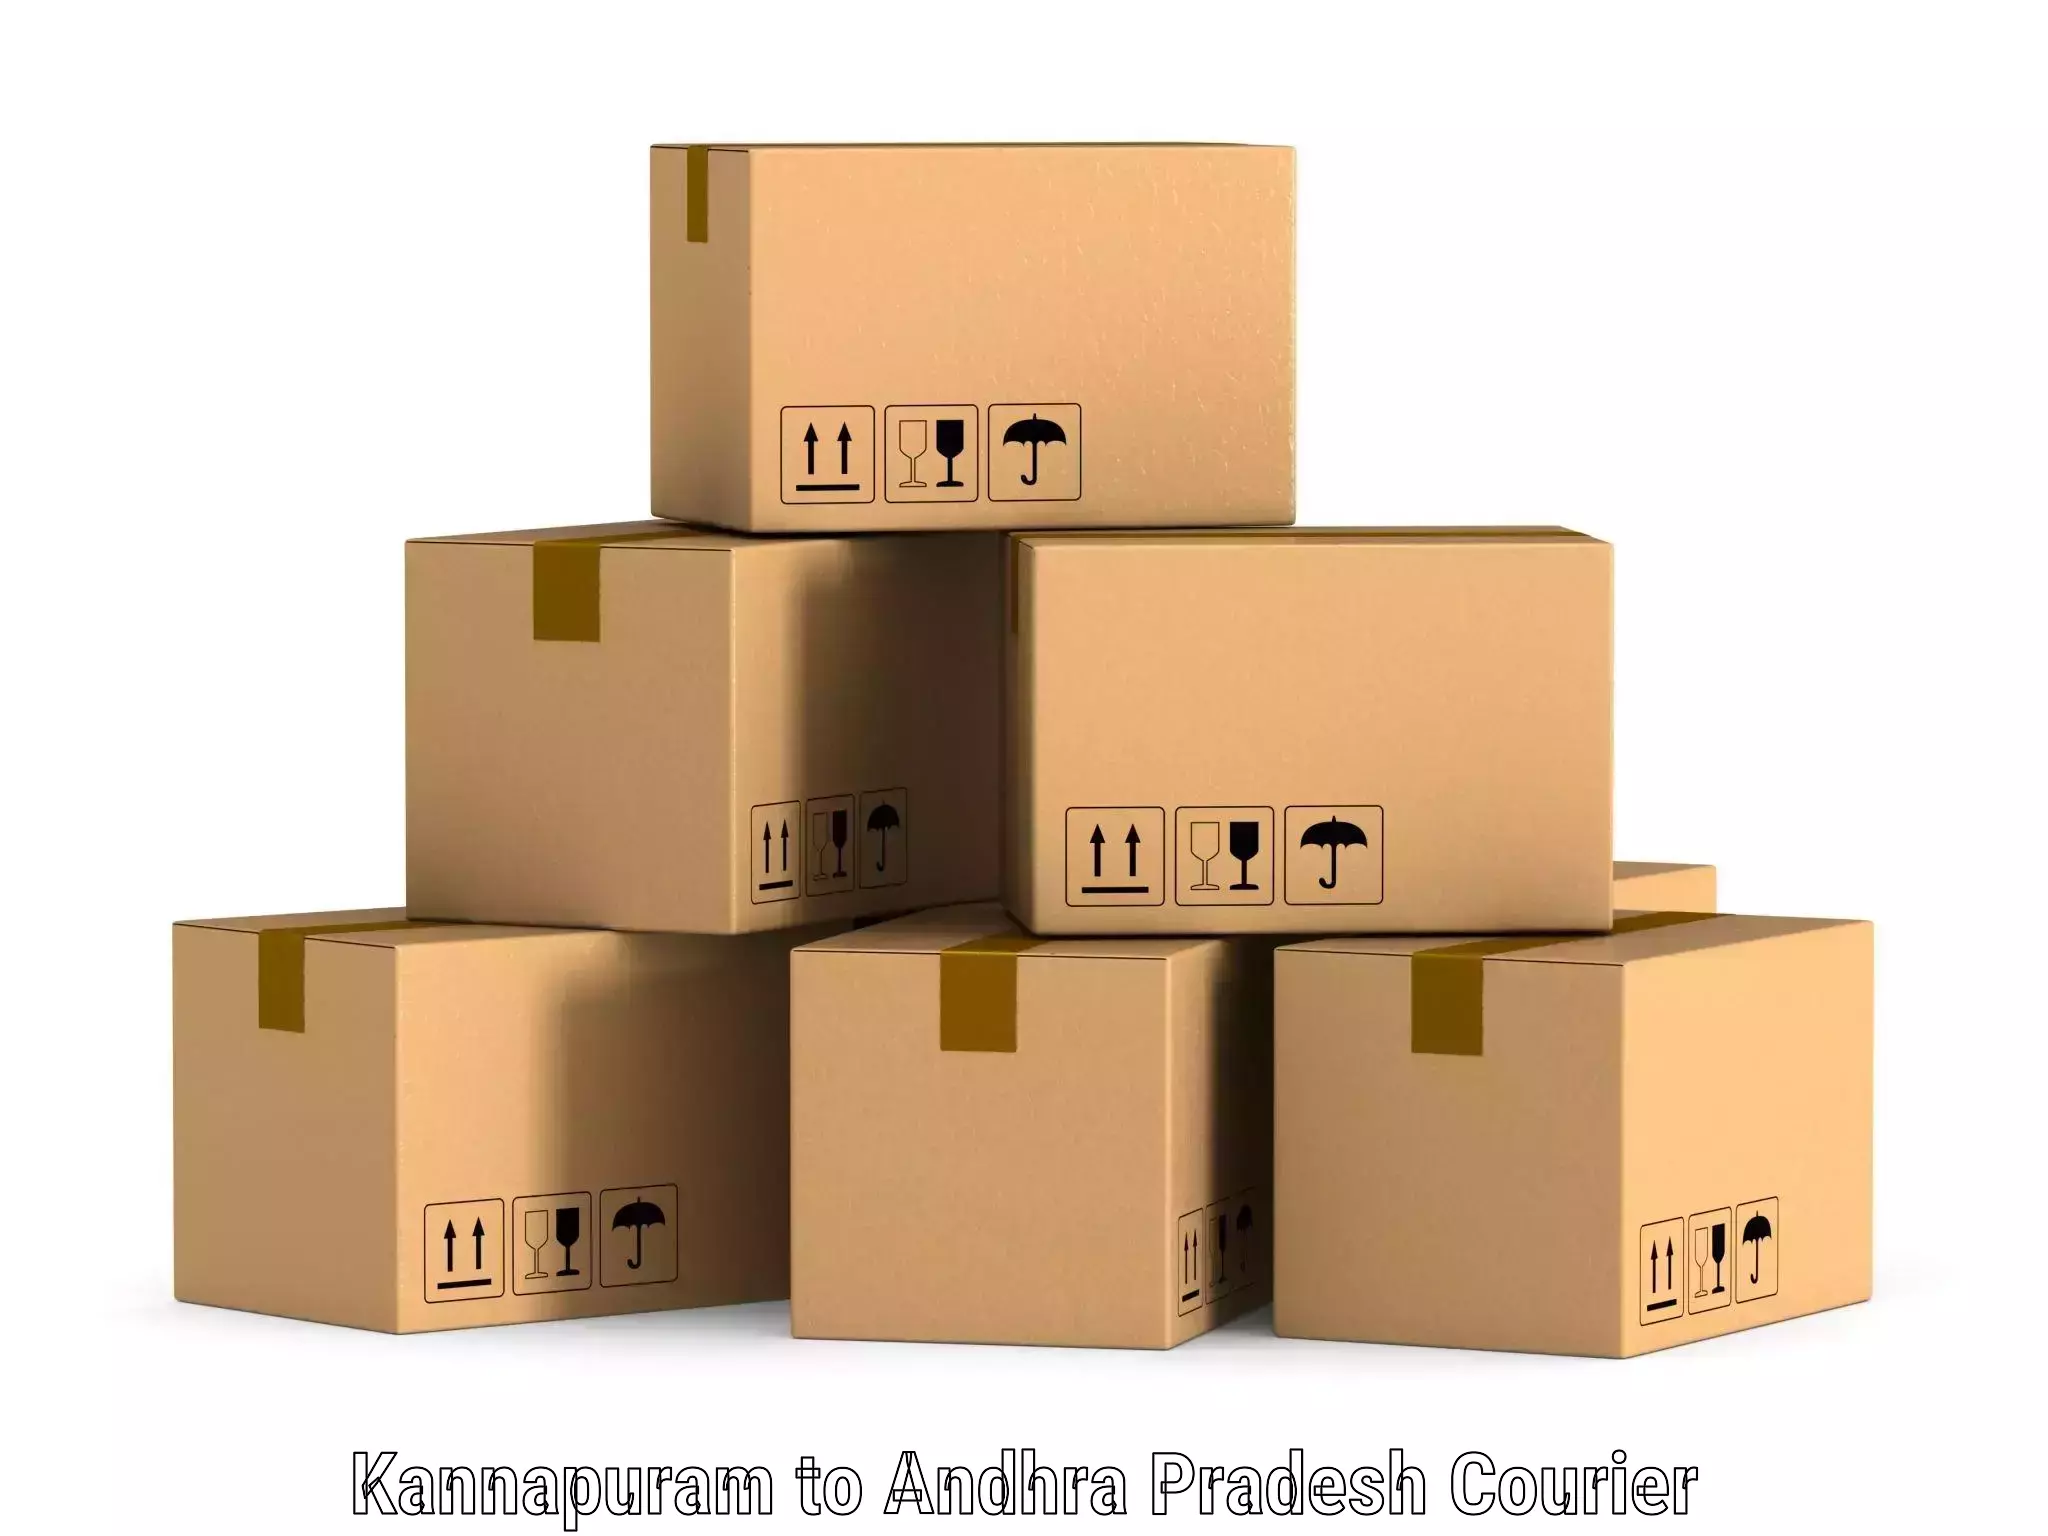 Package delivery network Kannapuram to Madakasira